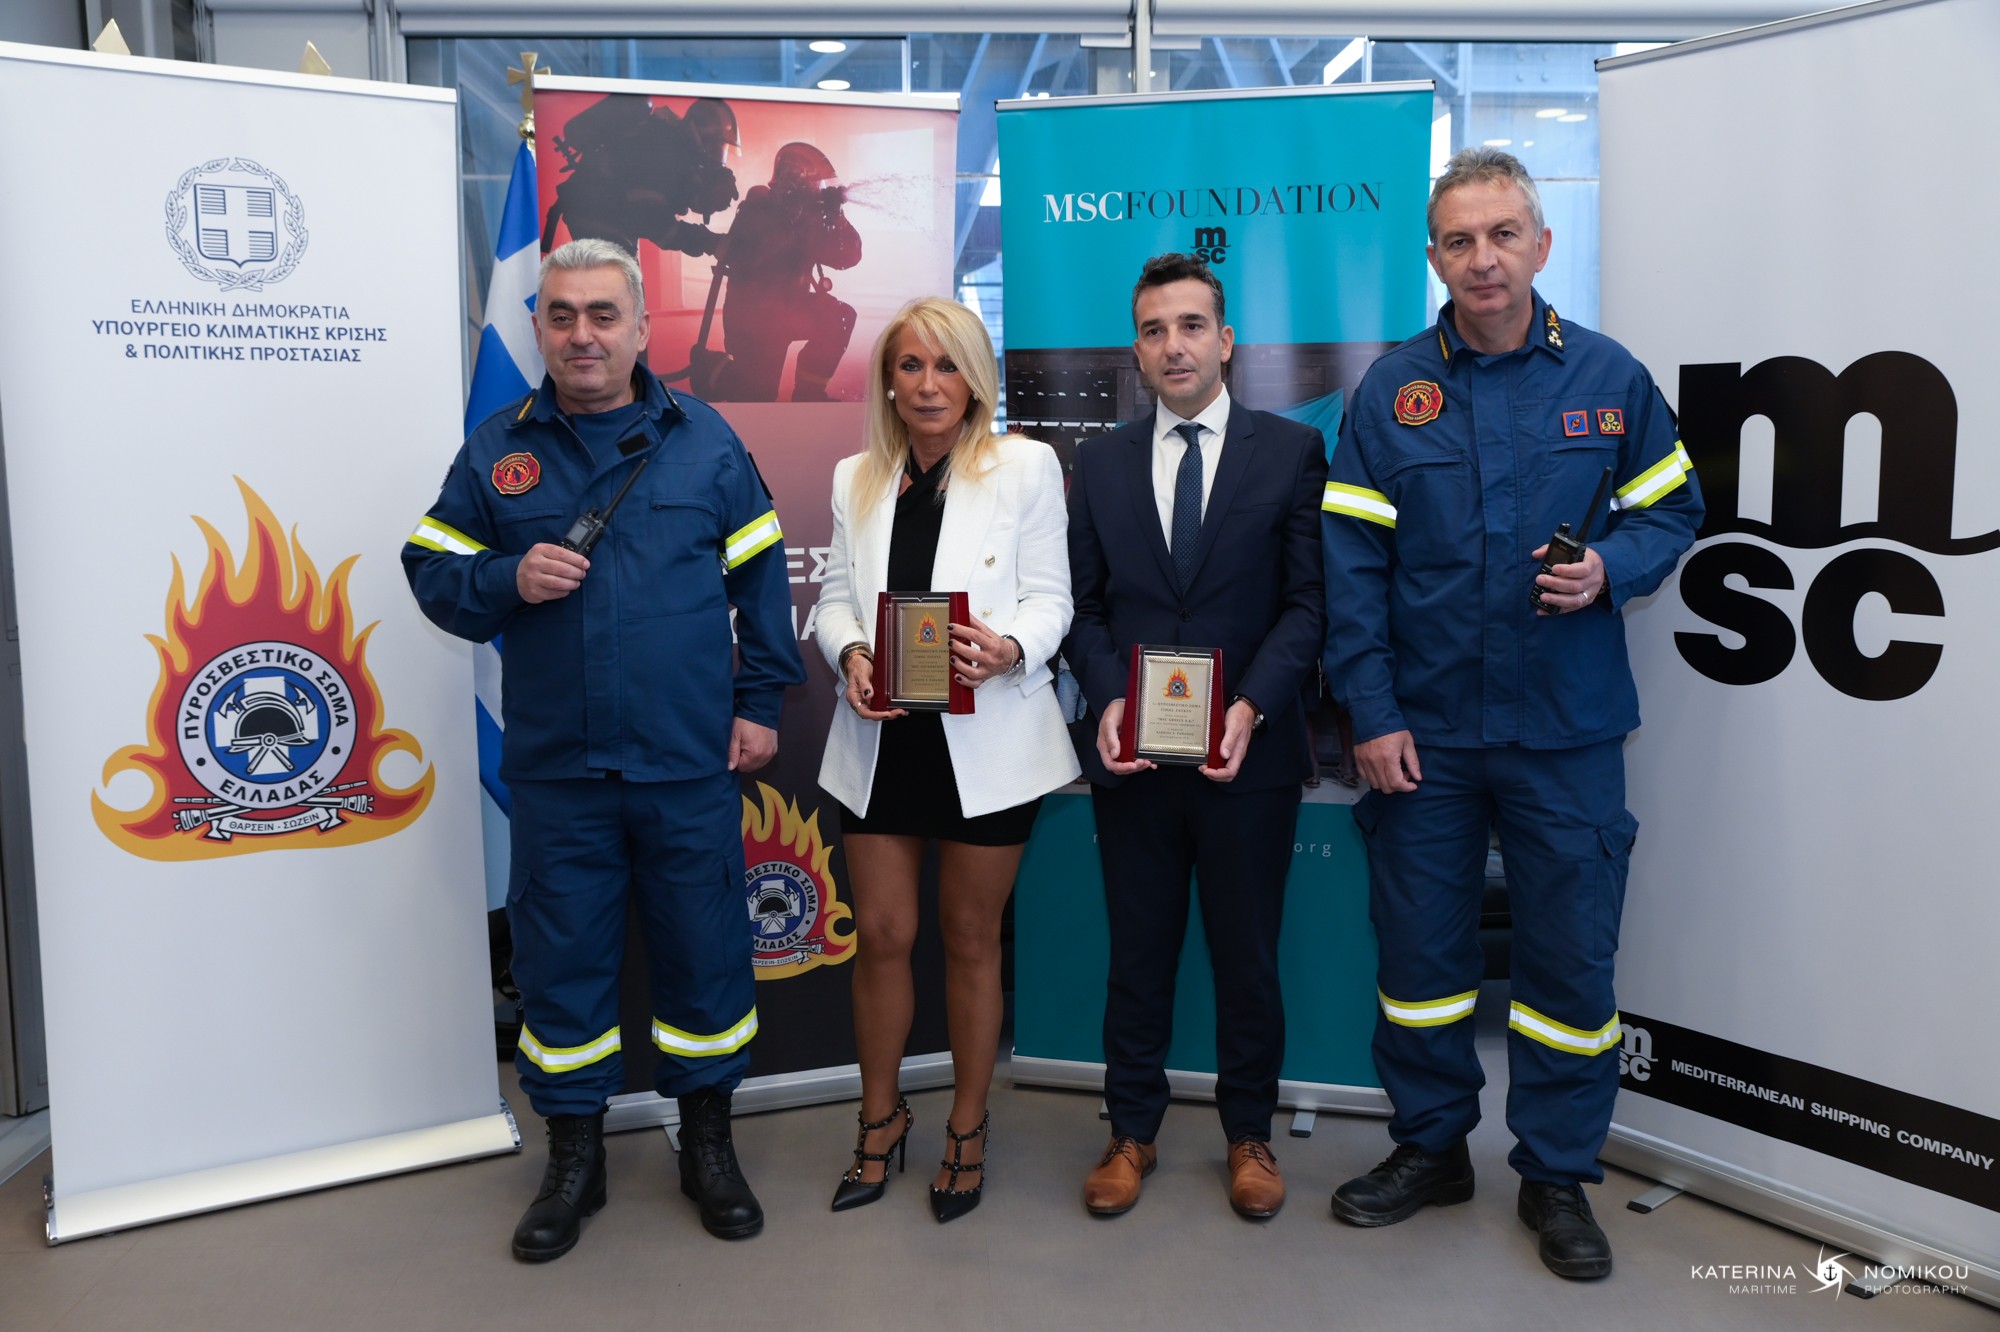 MSC Foundation: Δωρεά ασυρμάτων τελευταίας τεχνολογίας στο Ελληνικό Πυροσβεστικό Σώμα